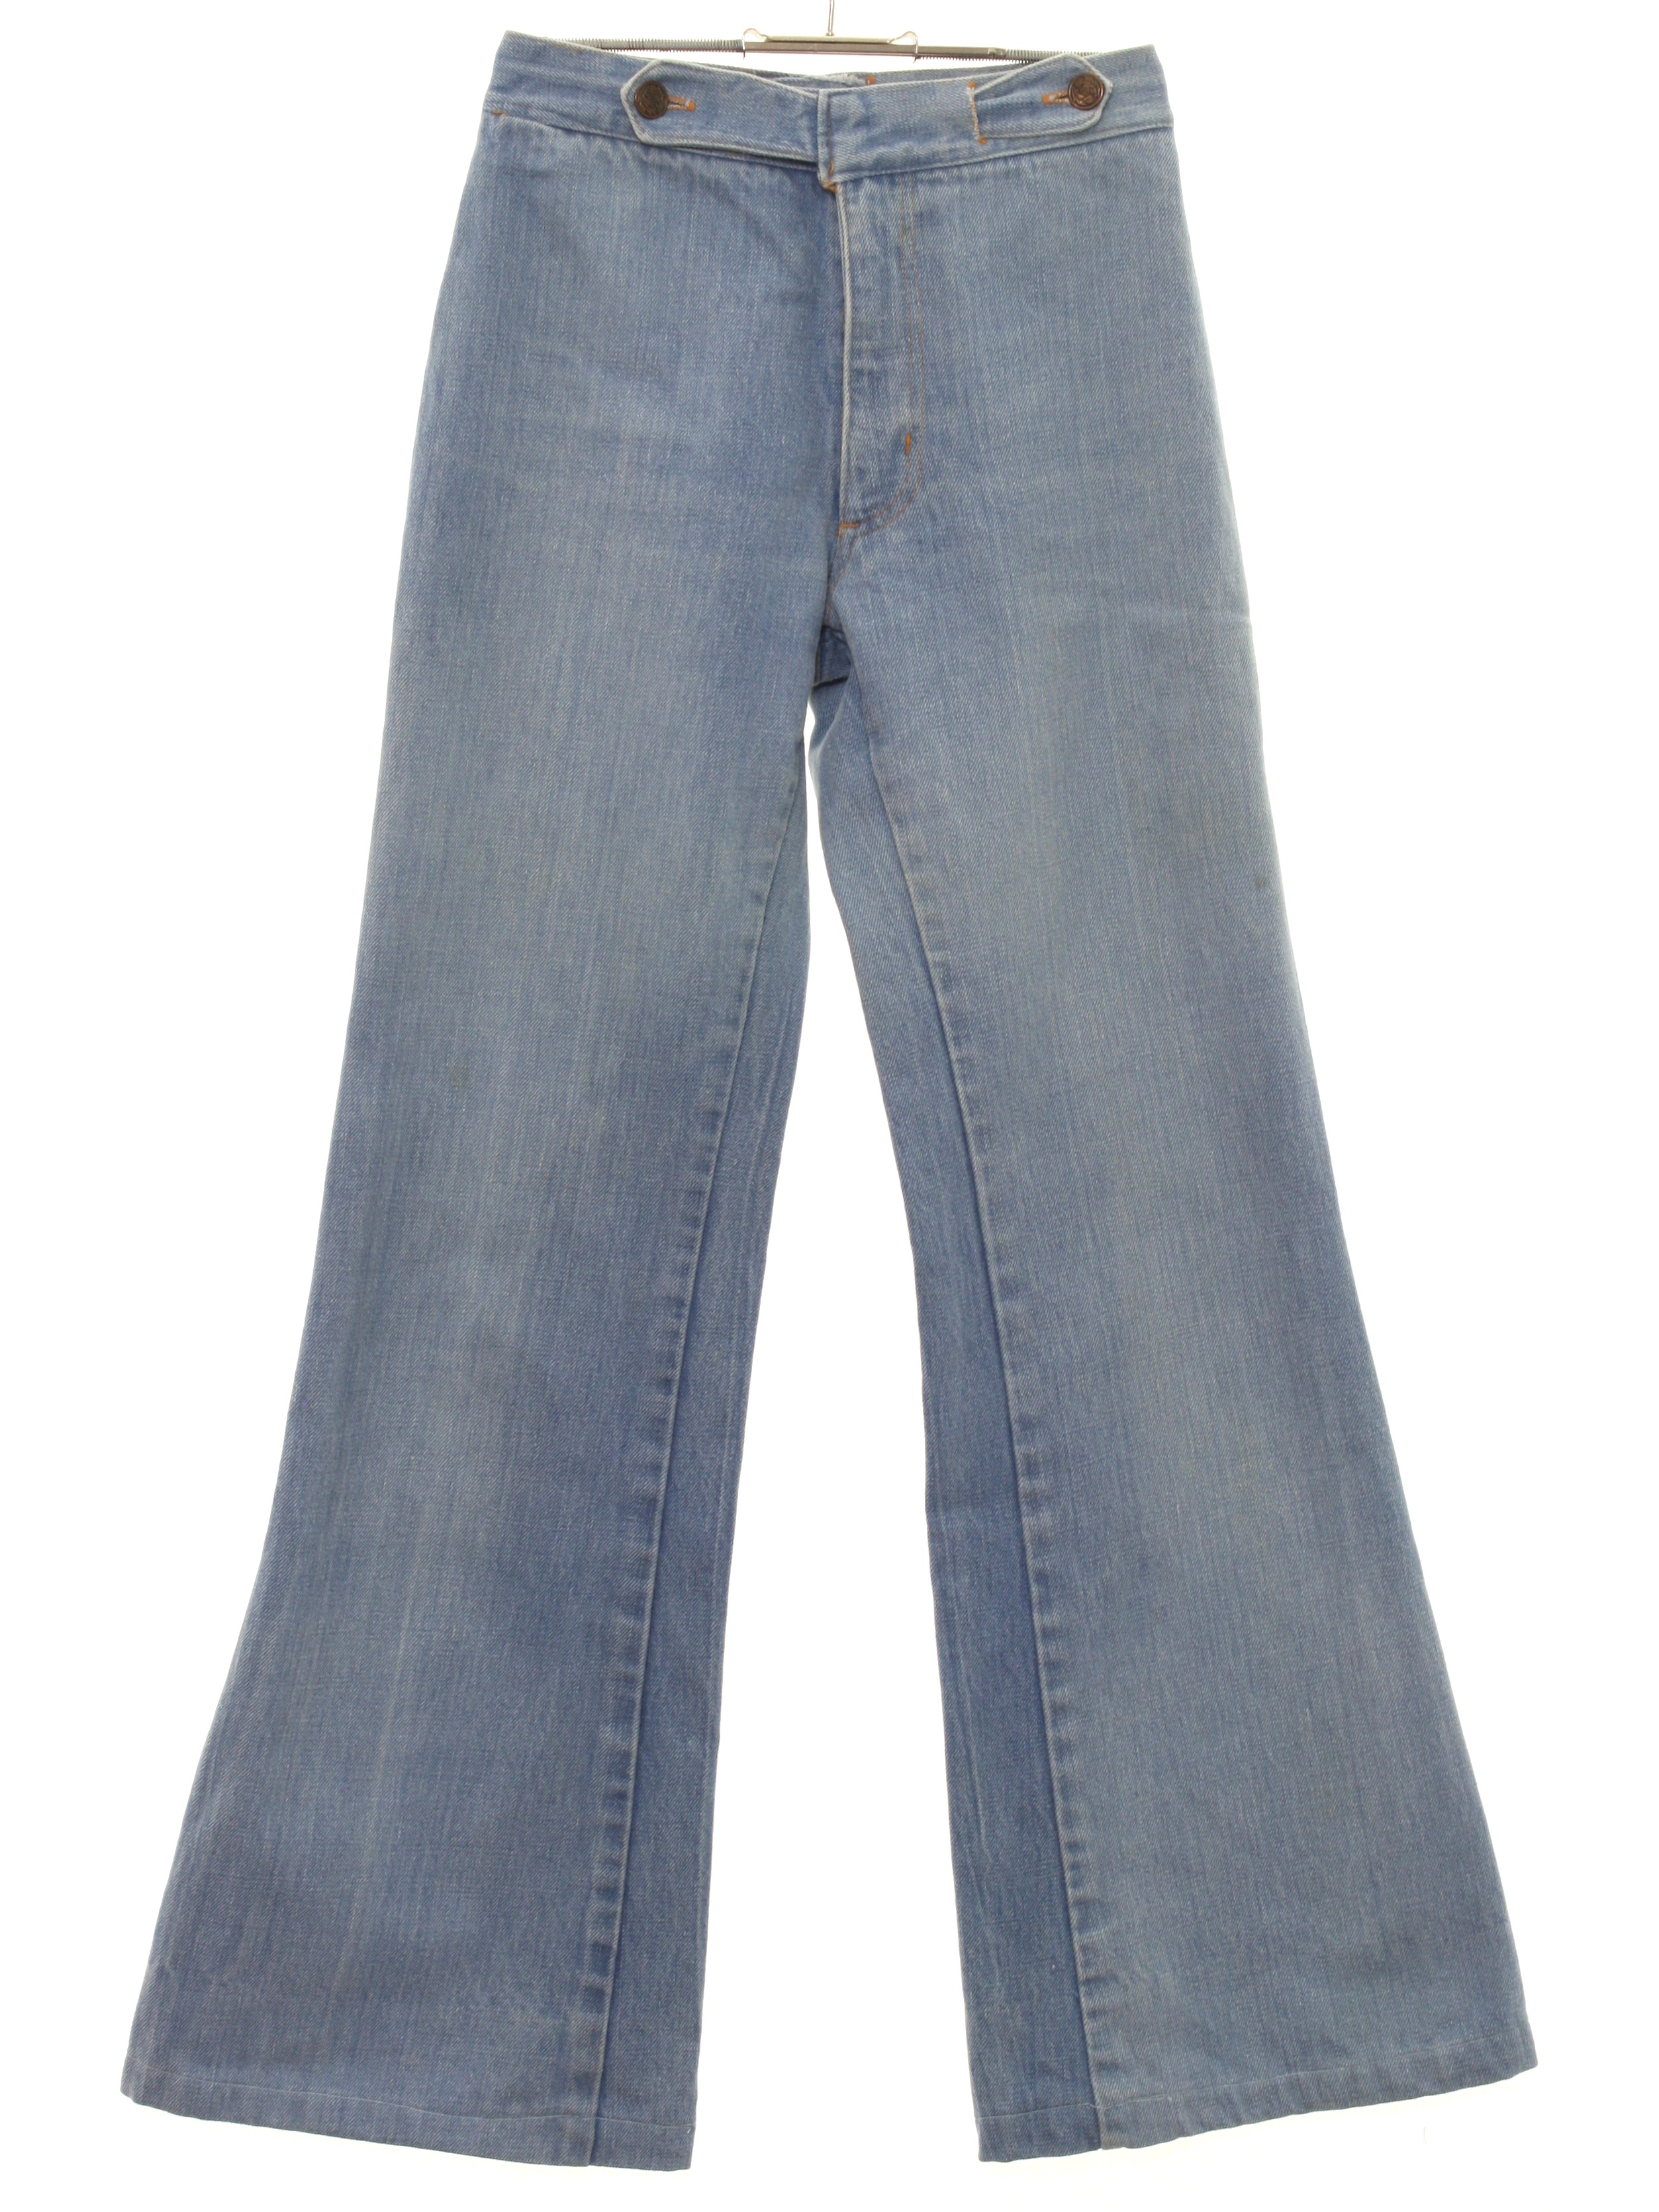 70s Retro Bellbottom Pants: 70s Cest Moi- Womens light blue cotton